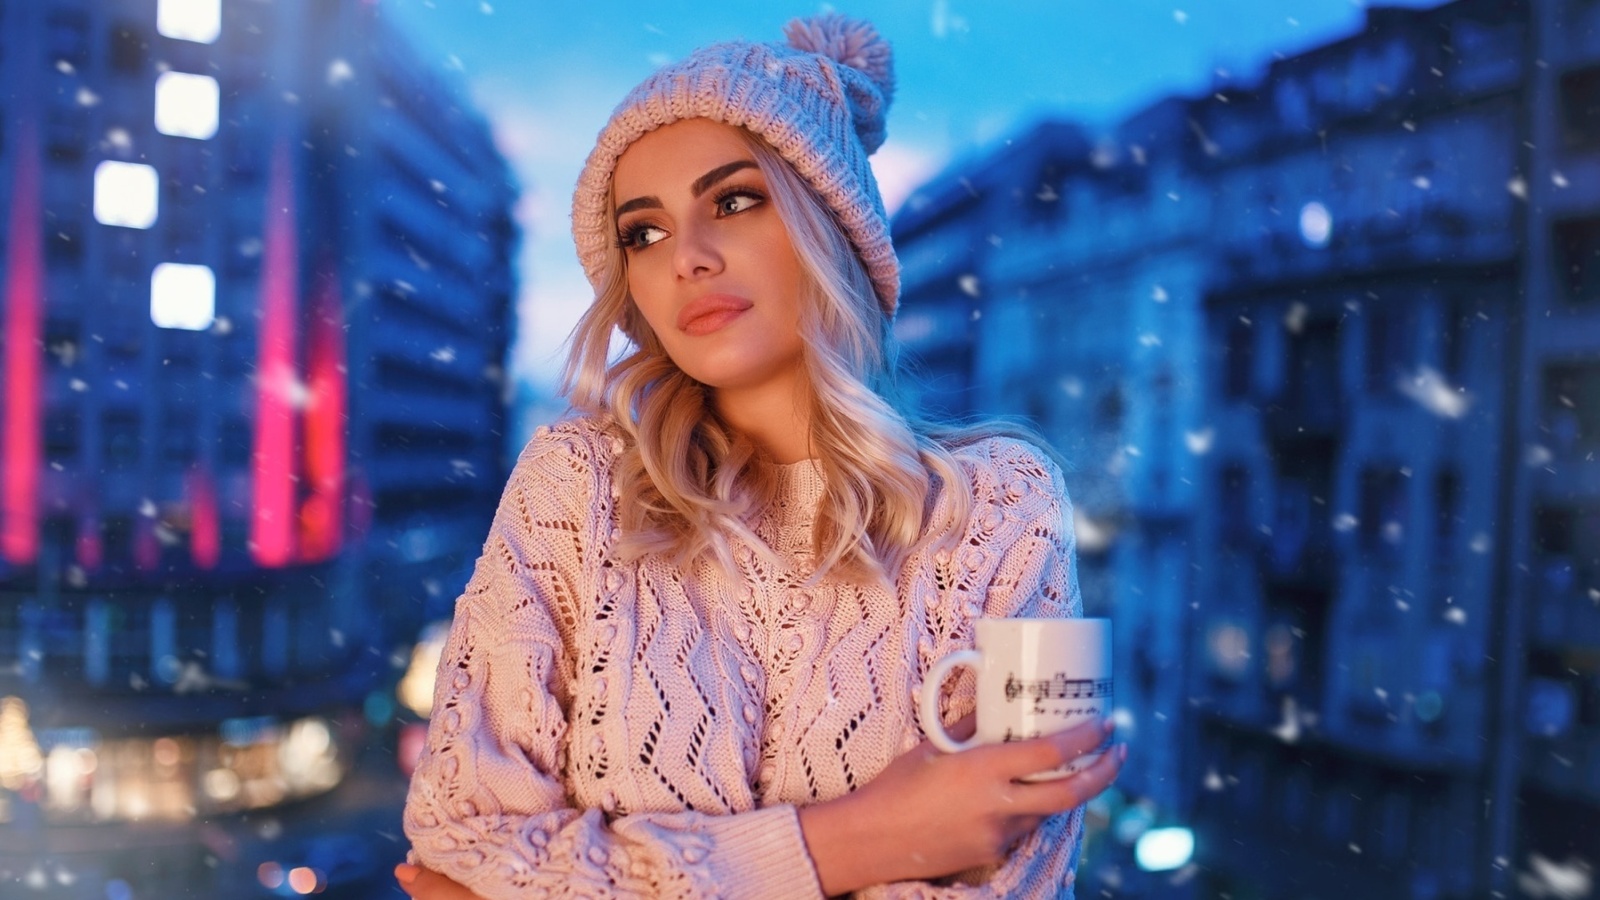 Winter stylish woman screenshot #1 1600x900